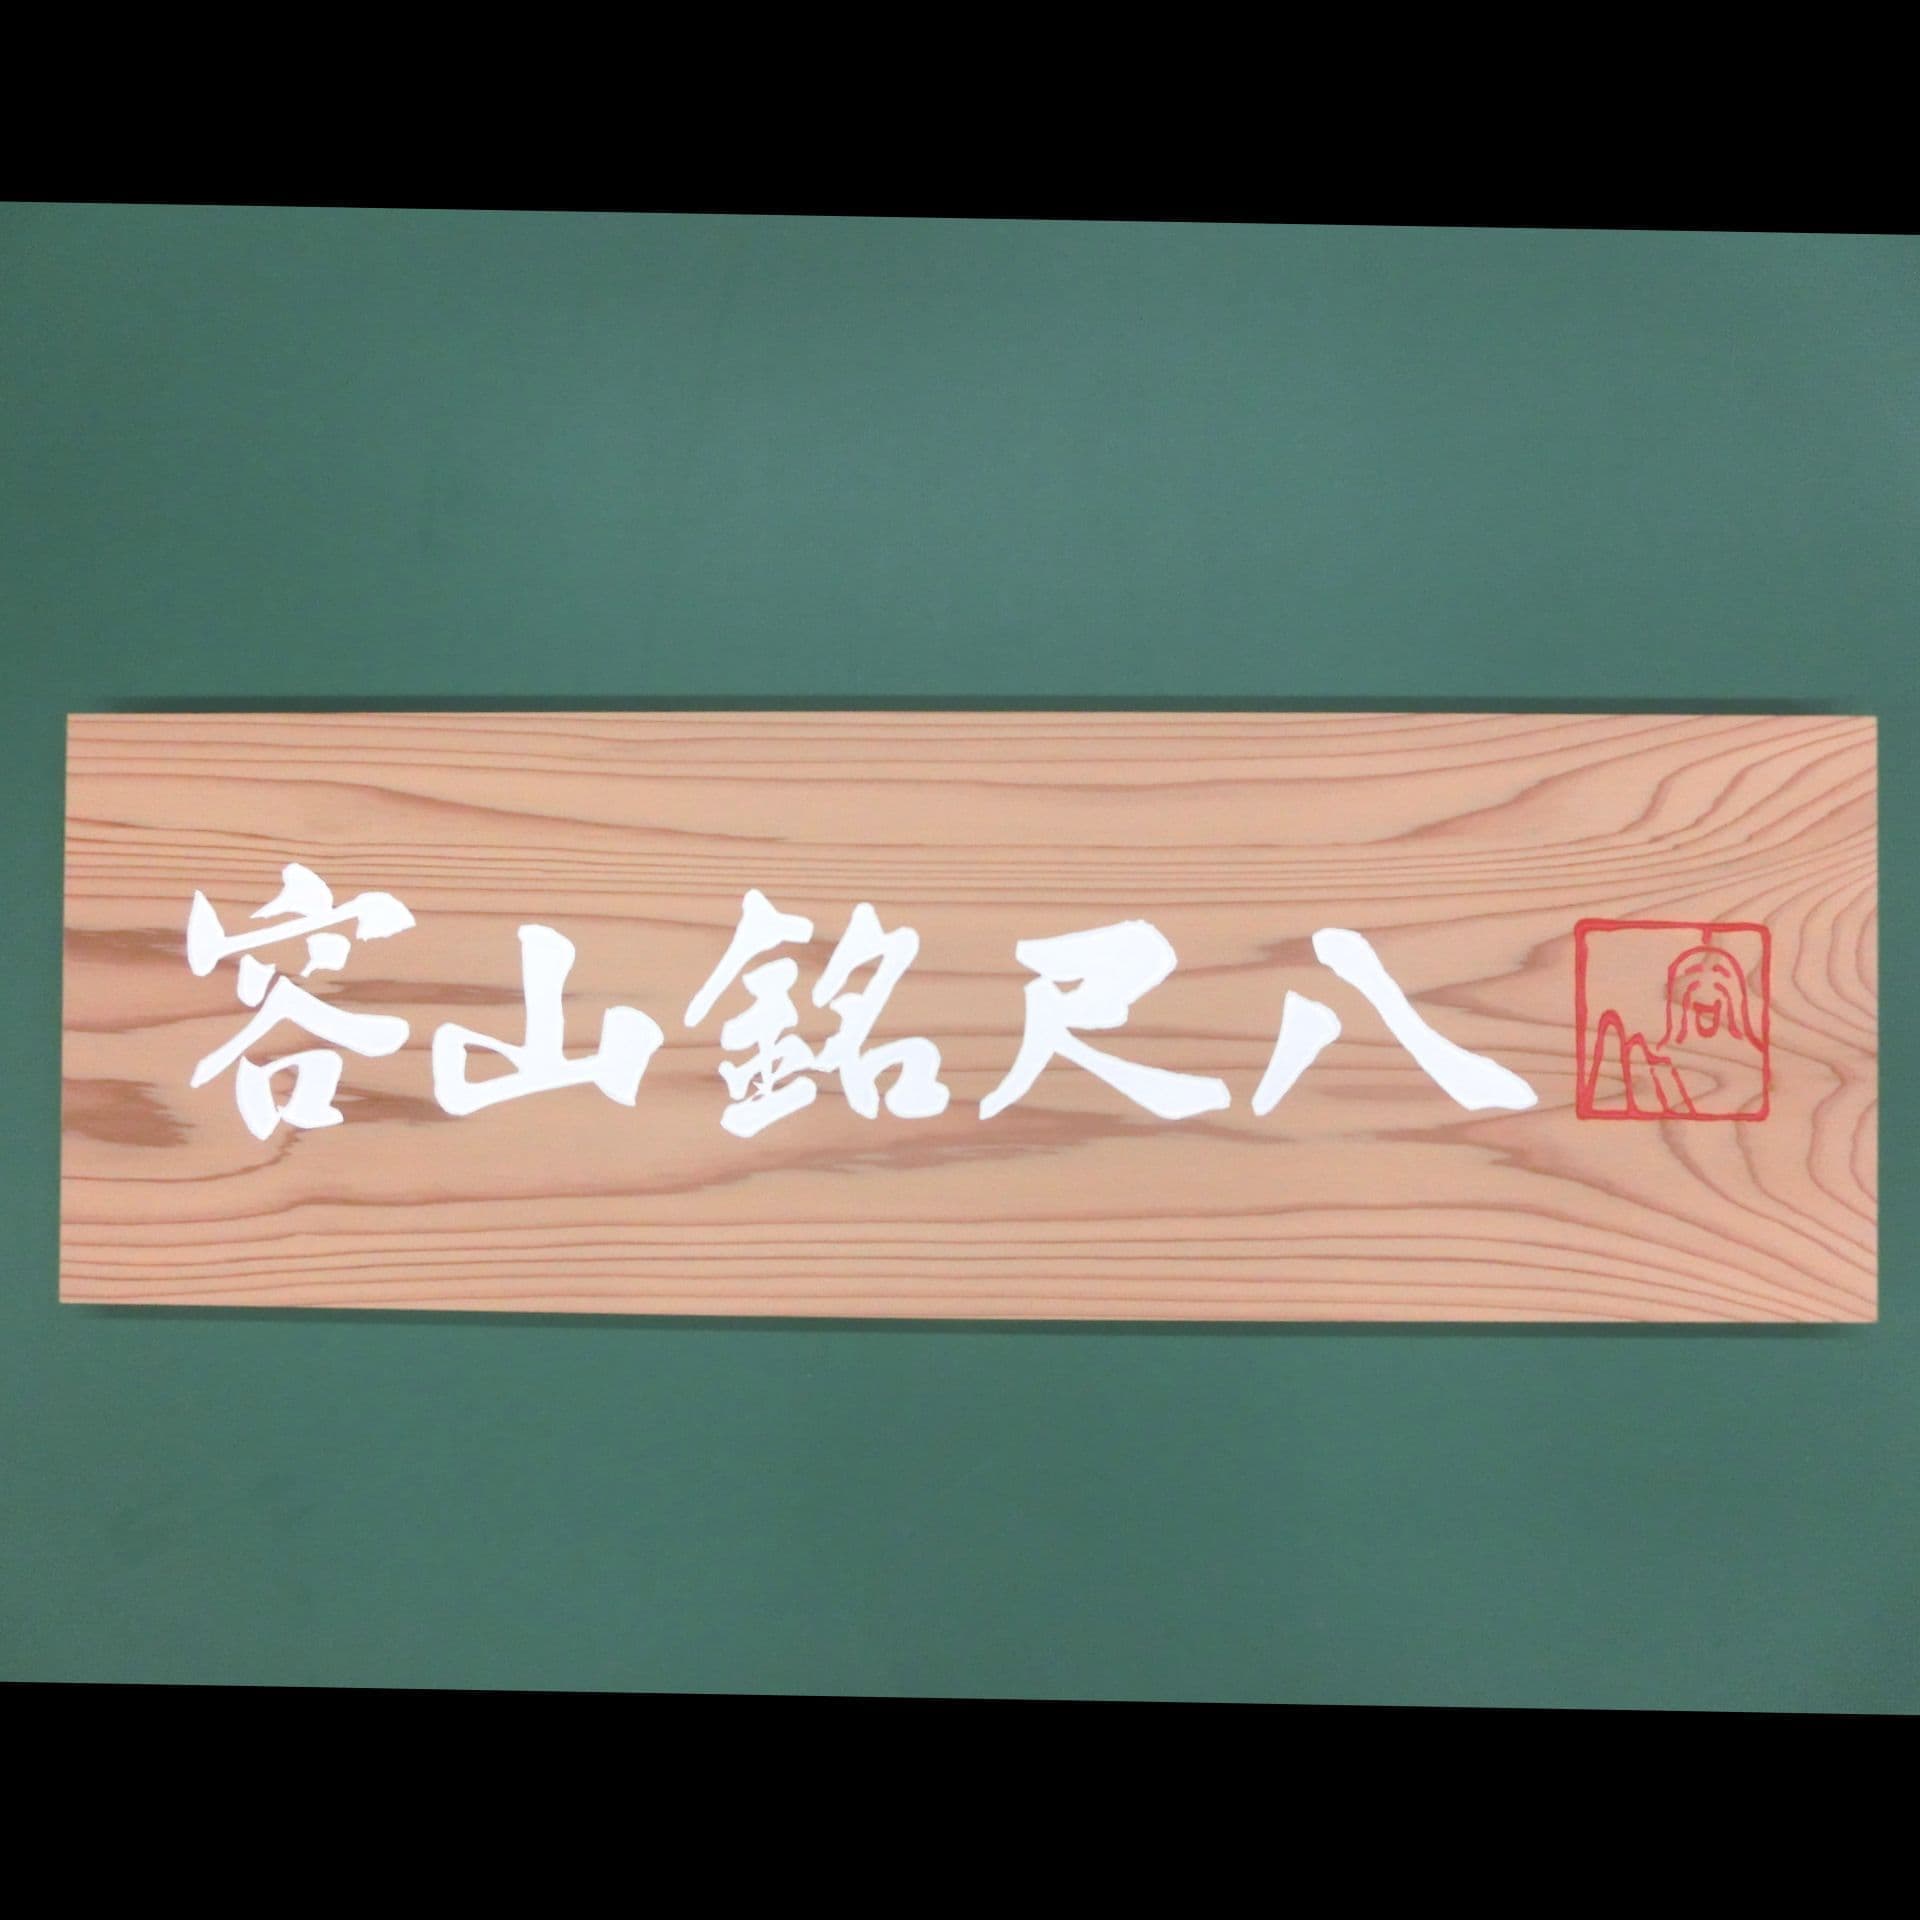 和楽器の尺八専門店の木製看板